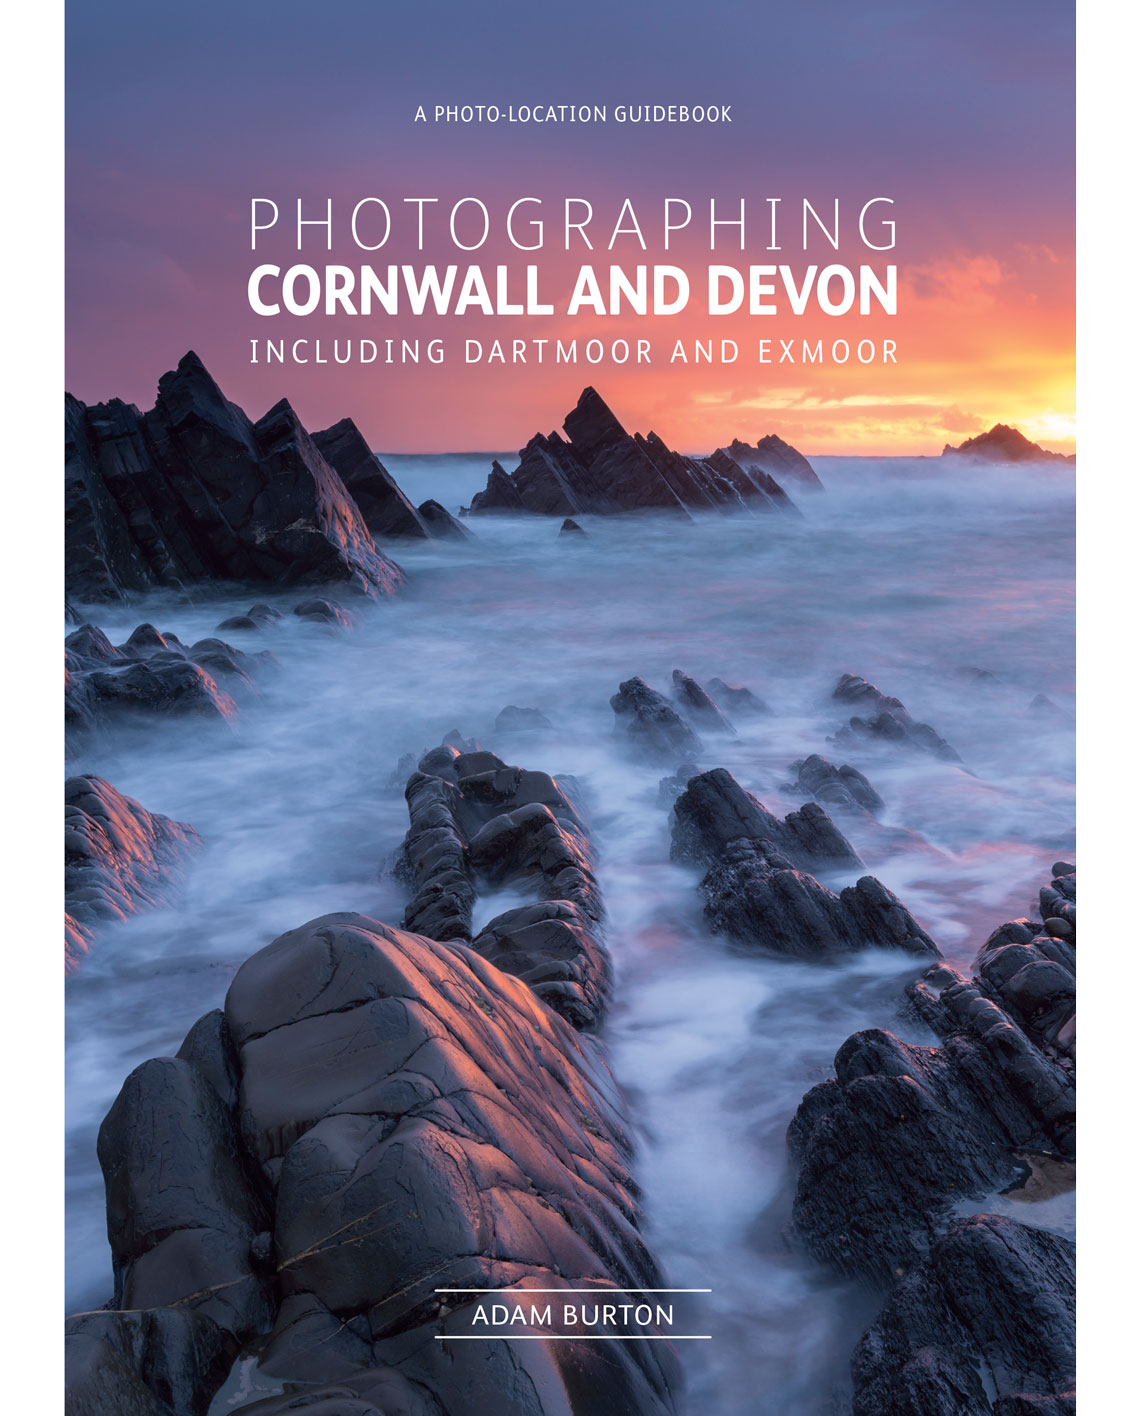 Online bestellen: Reisfotografiegids Photographing Cornwall and Devon | Fotovue